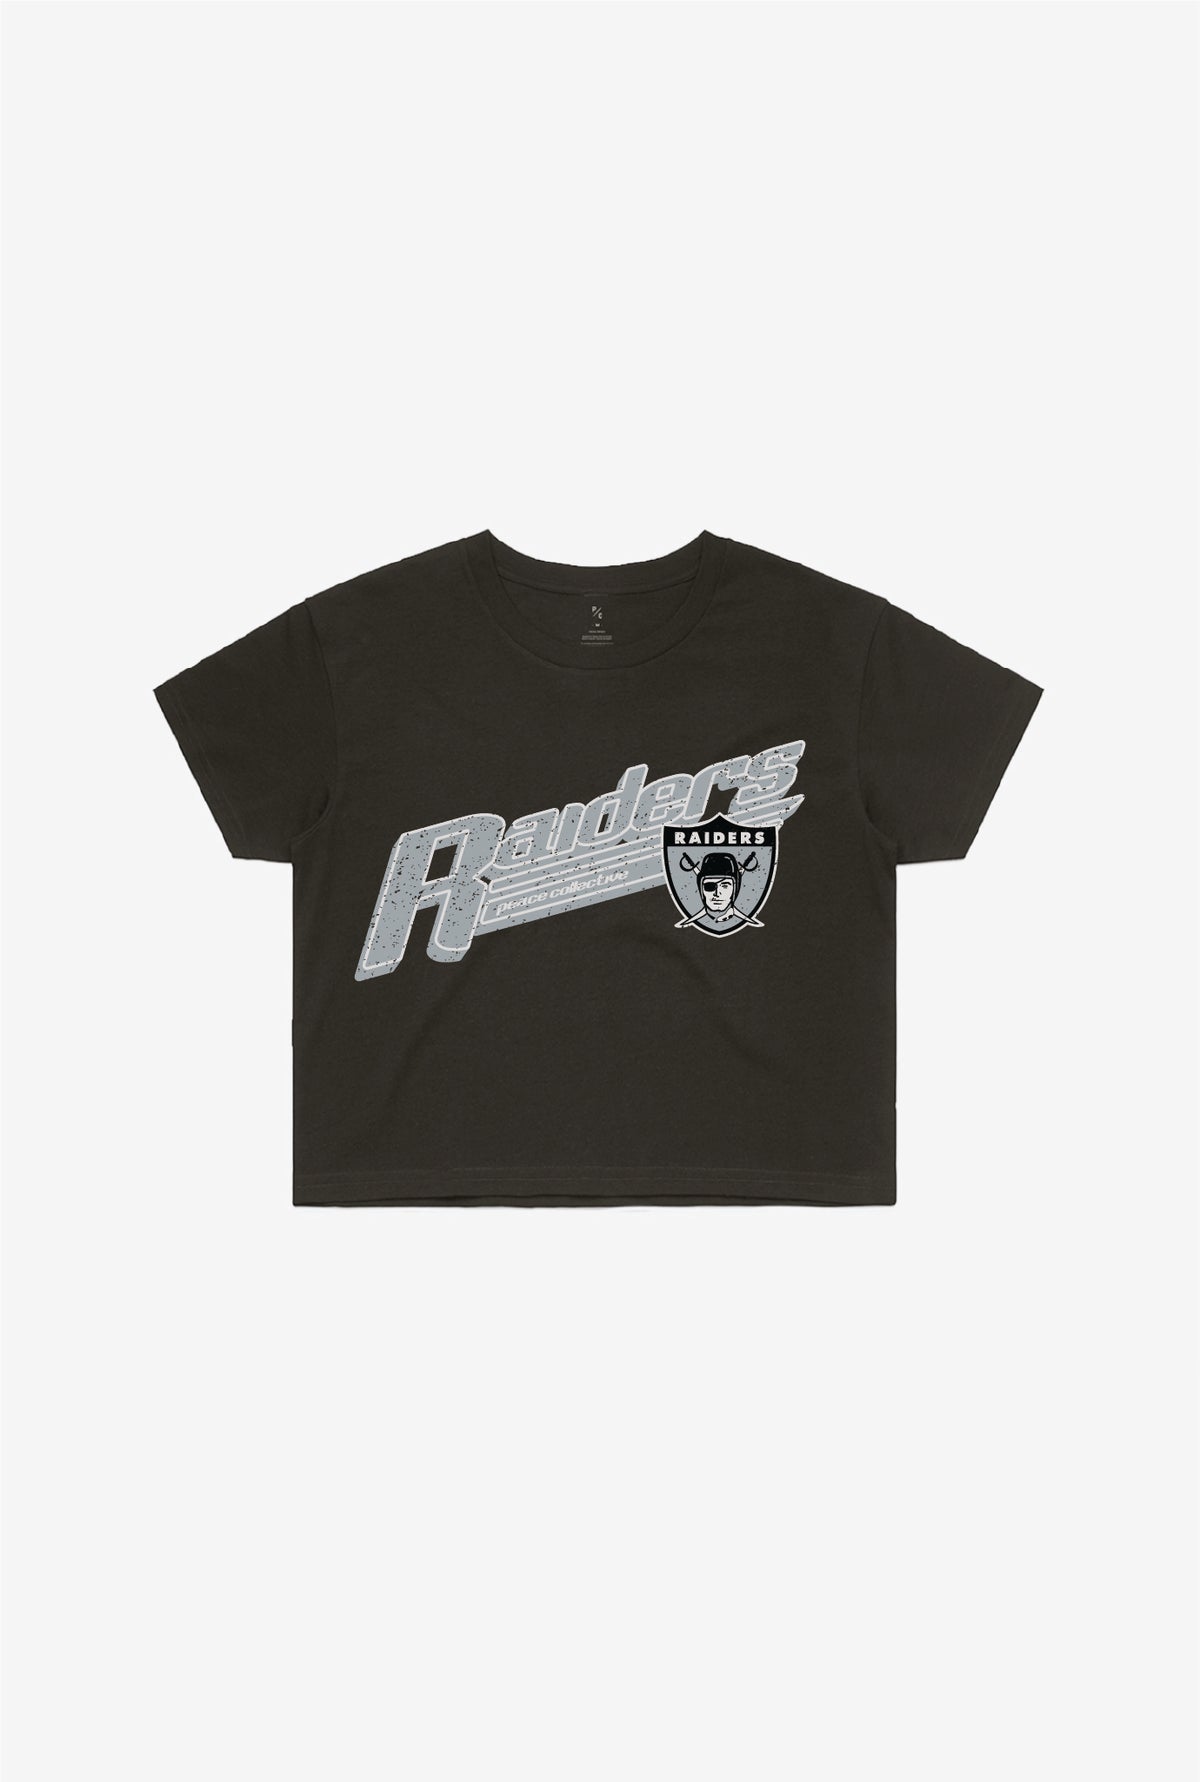 Las Vegas Raiders Vintage Cropped T-Shirt - Black